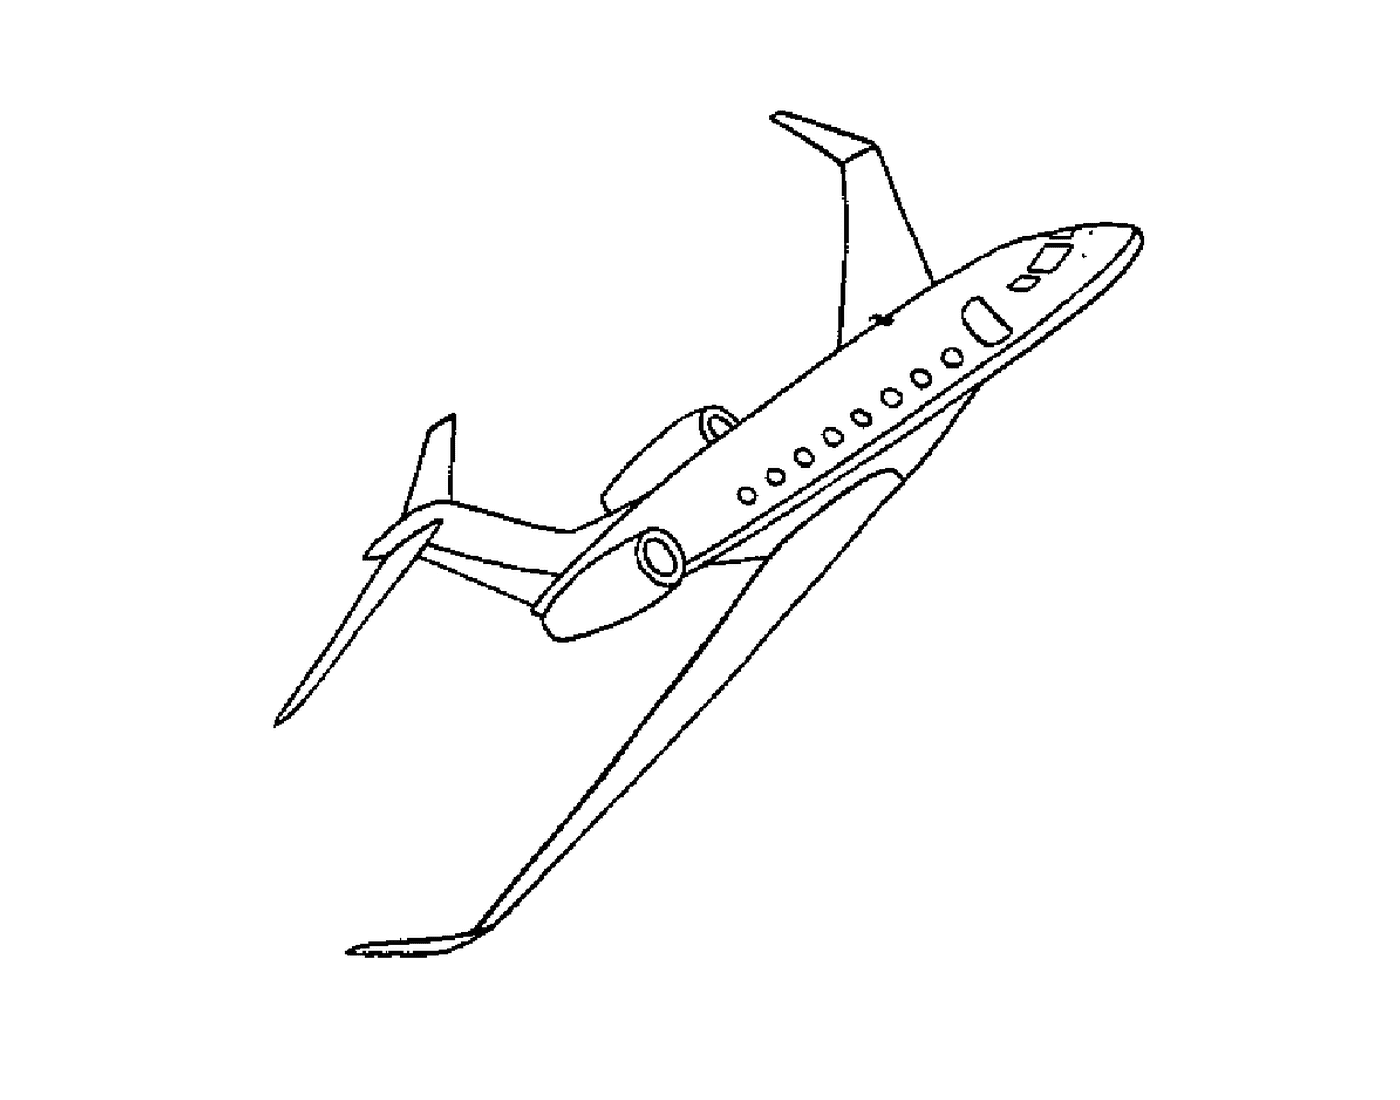  Um avião voando 